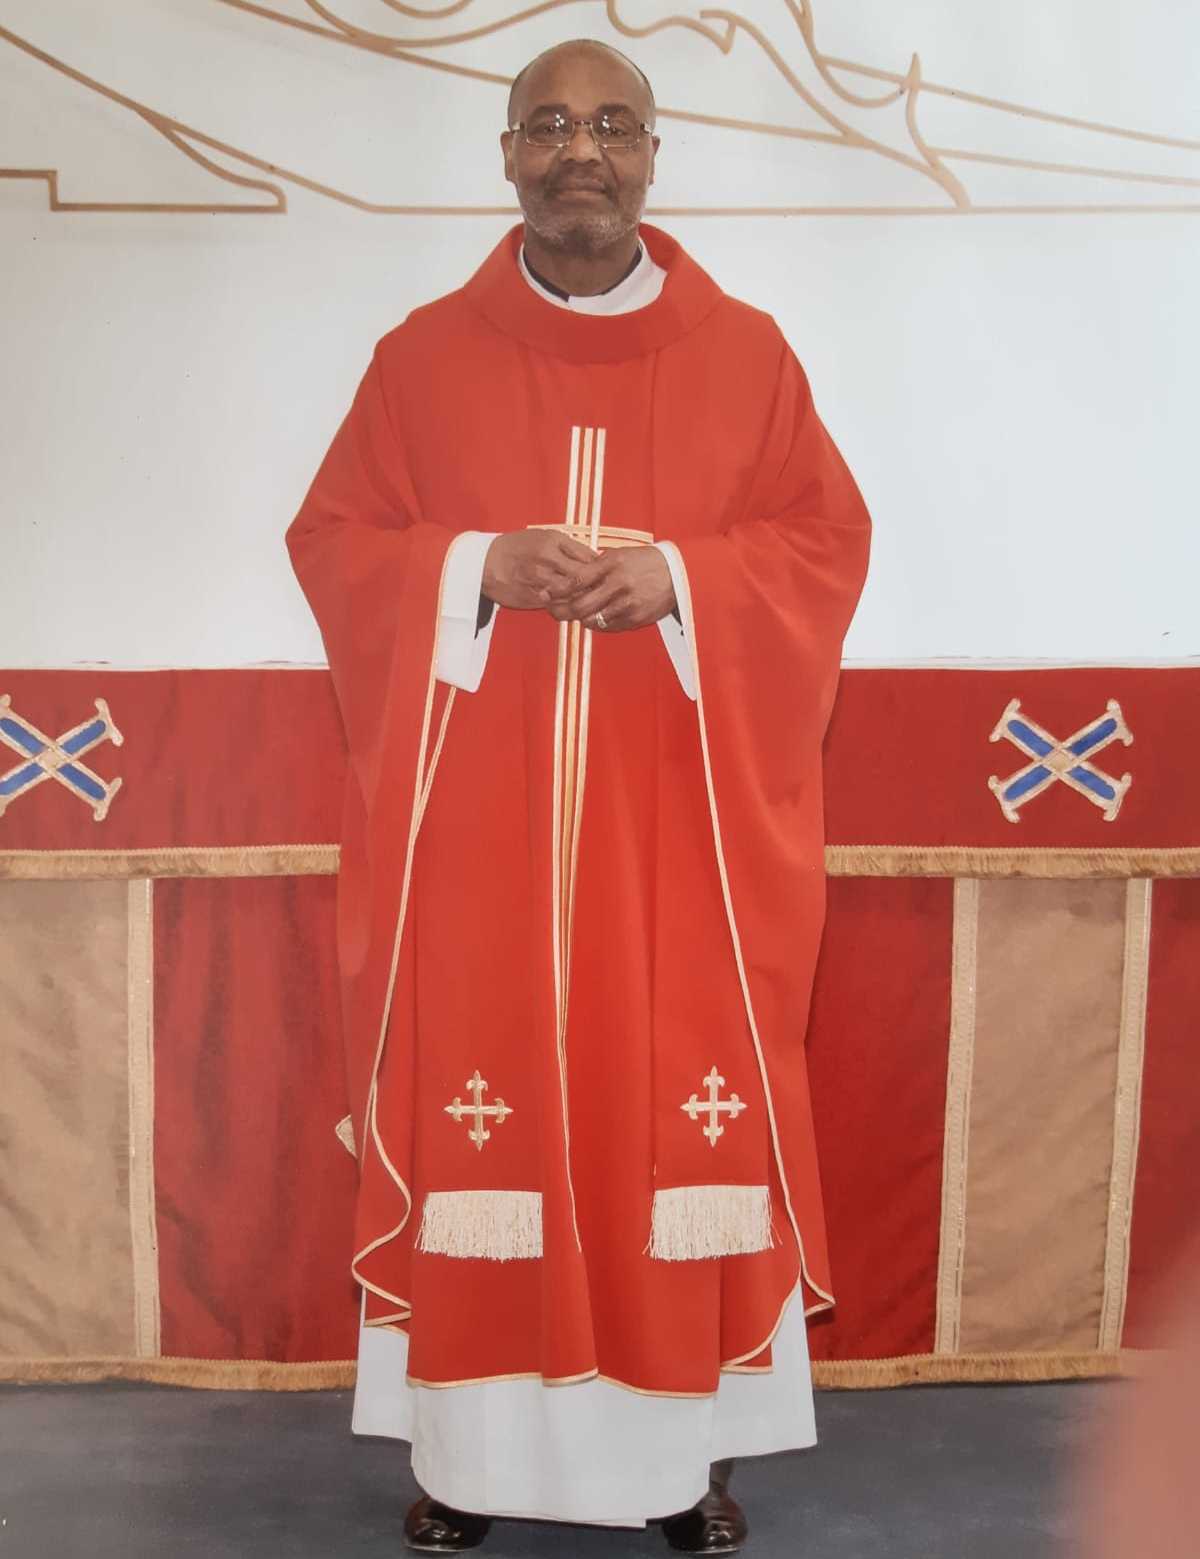 Rev. Vernon Duporte